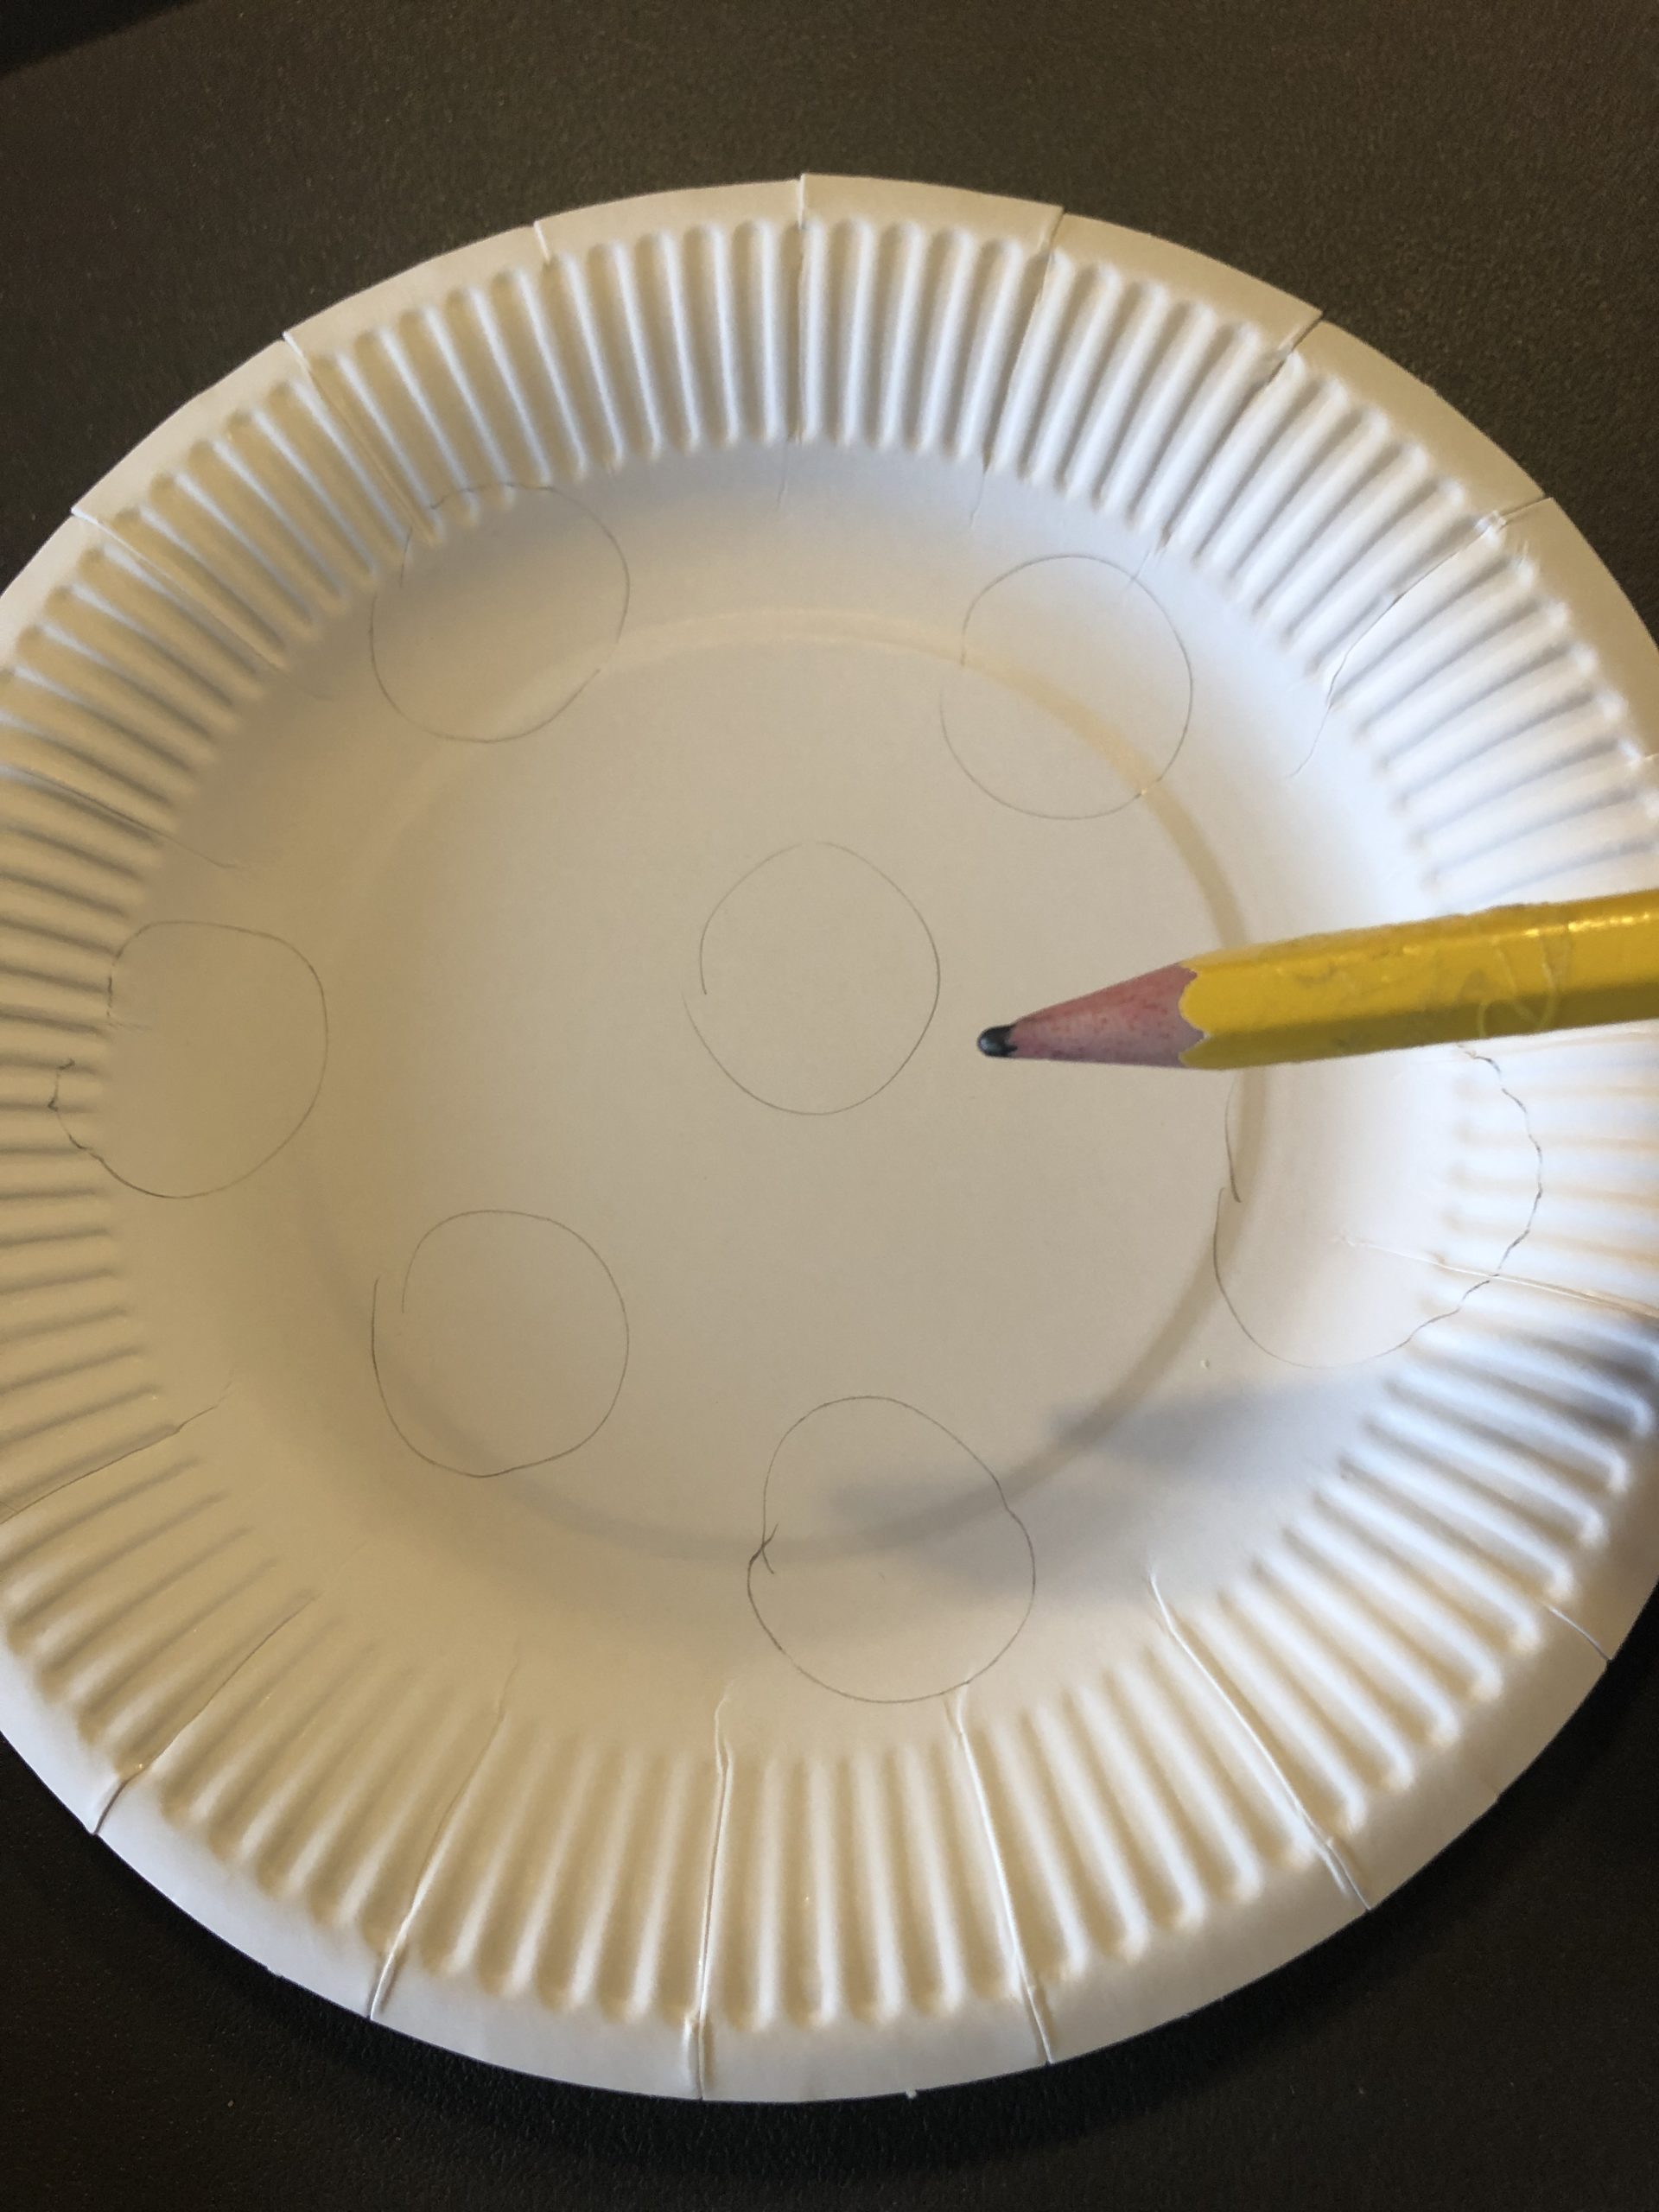 Bild zum Schritt 2 für die Kinder-Beschäftigung: 'Jetzt zeichnet auf den Pappteller kleine Kreise auf.'